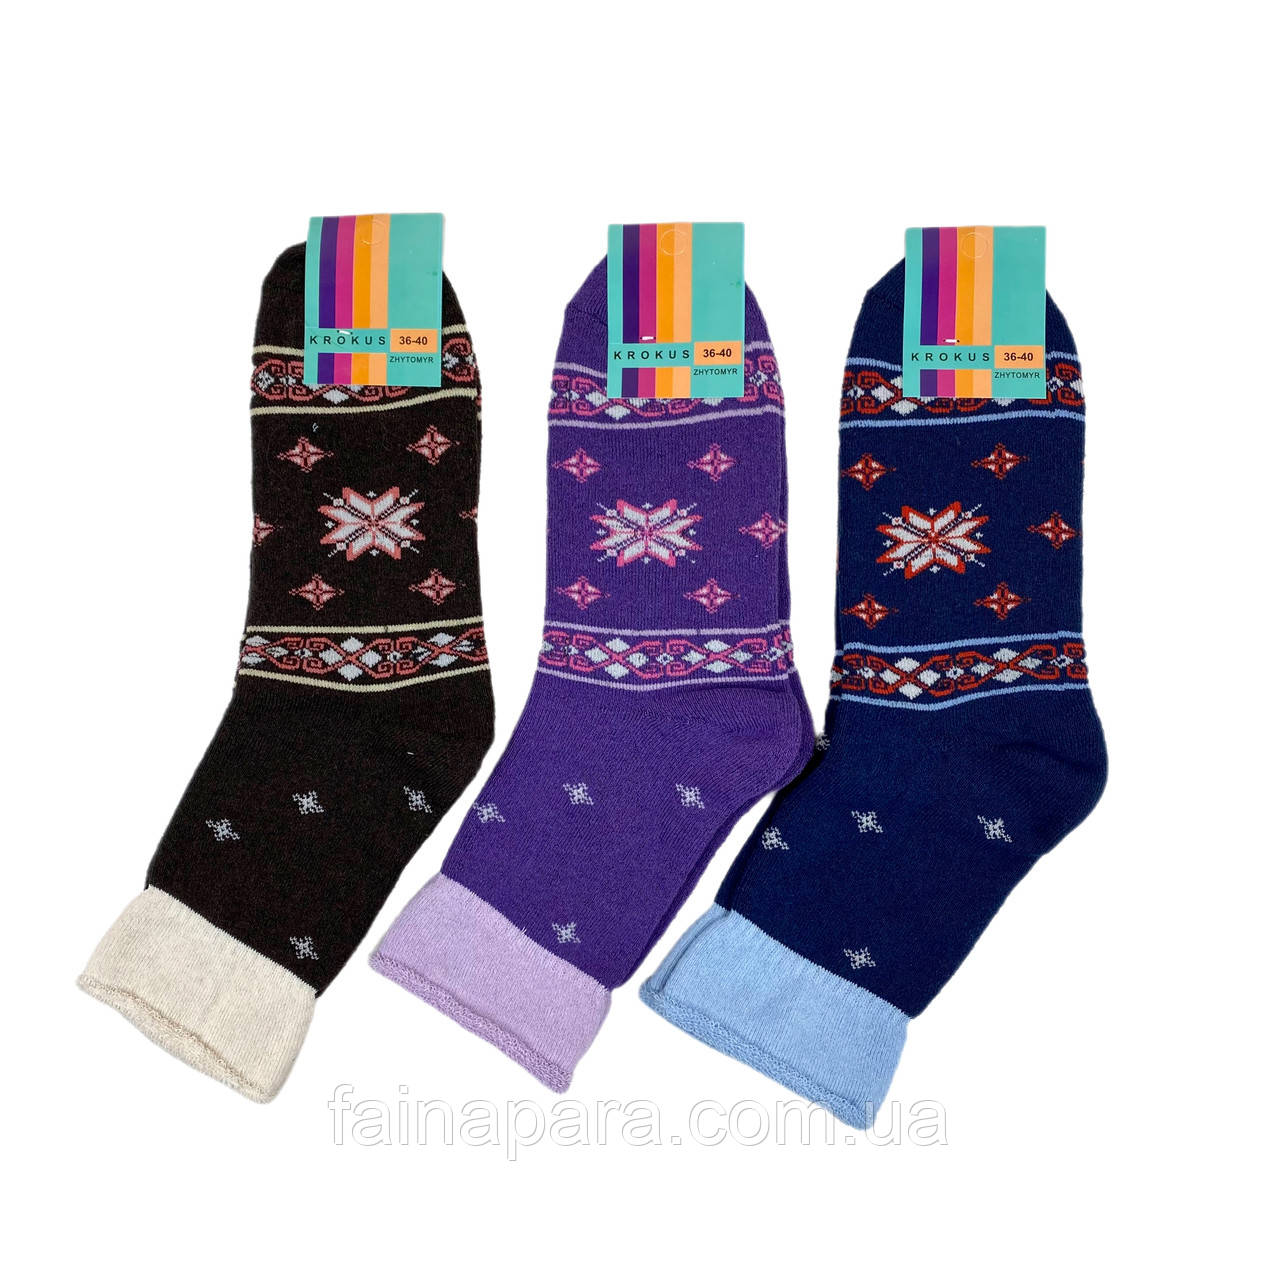 Жіночі махрові шкарпетки без резинки з візерунком (орнамент сніжинка)